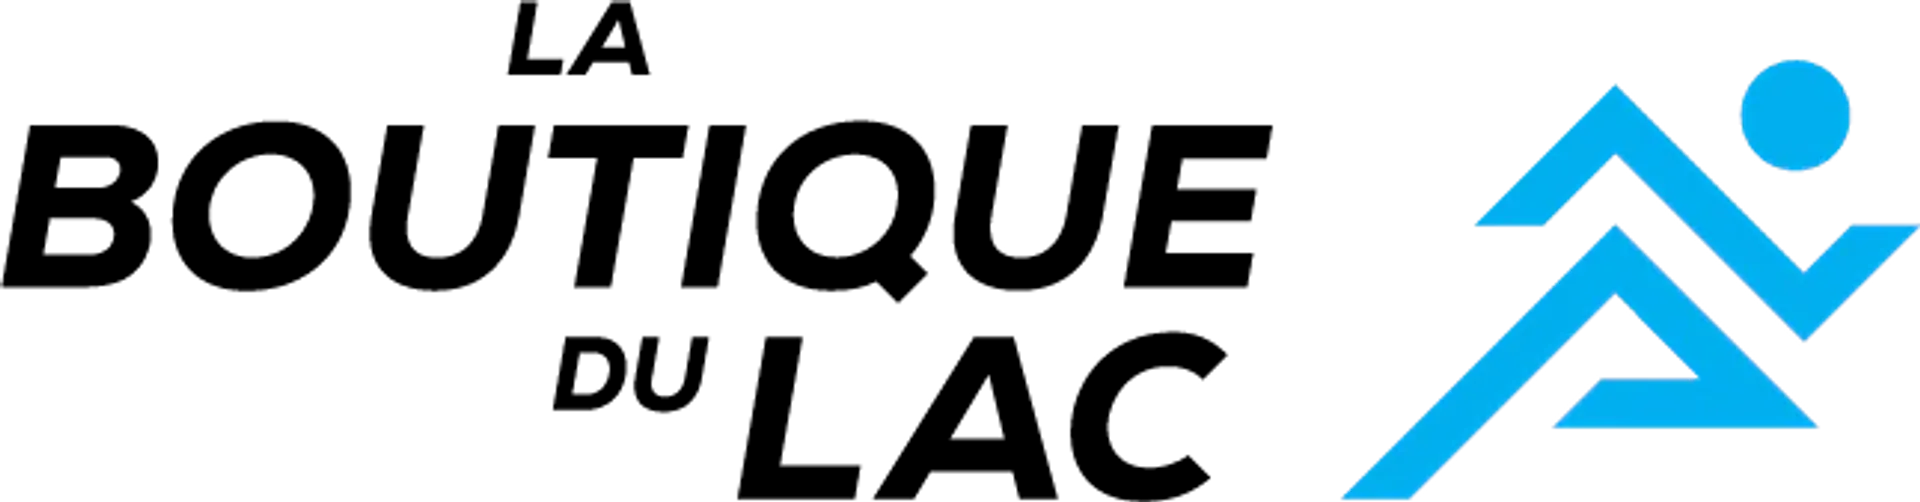 BOUTIQUE DU LAC logo de circulaires